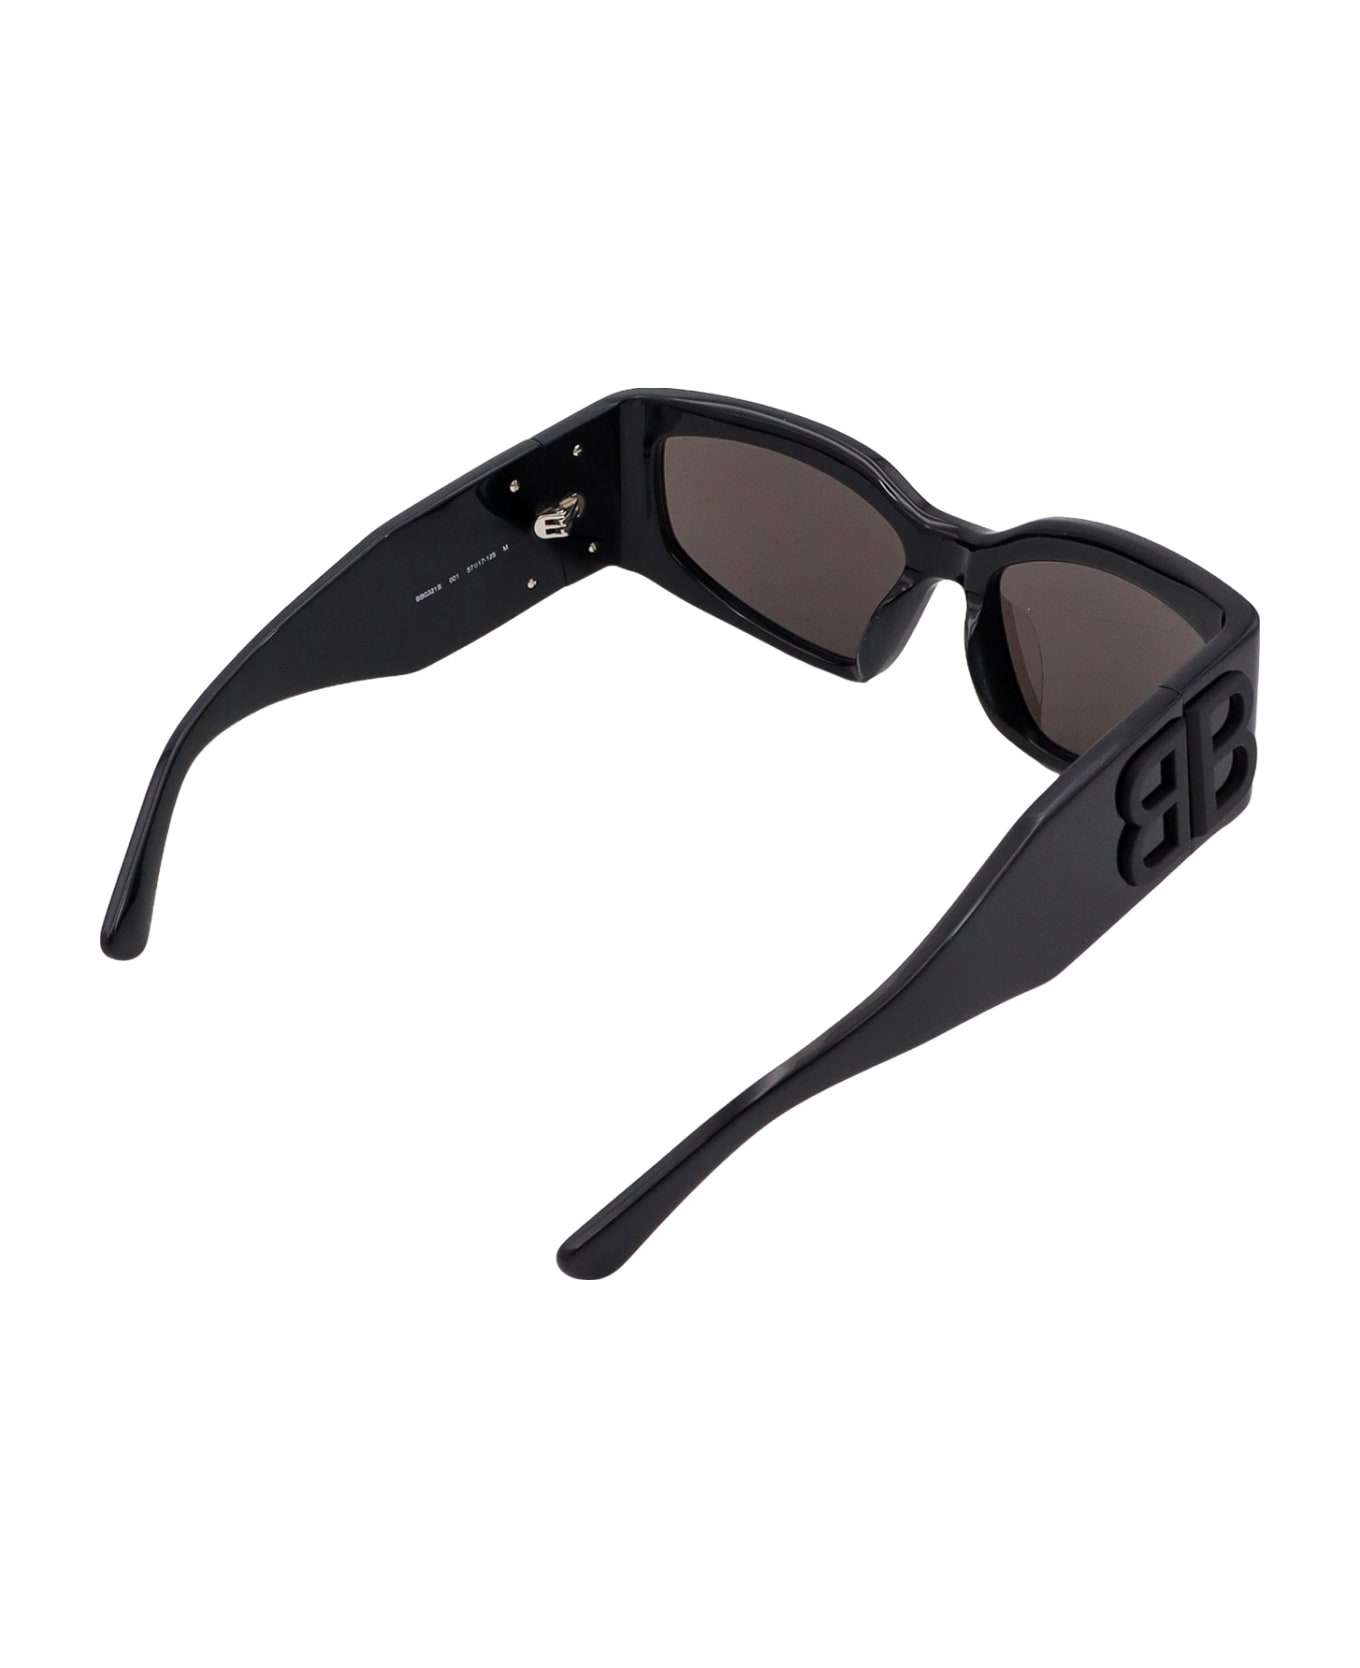 Balenciaga Eyewear Bossy Cat Sunglasses - Black サングラス